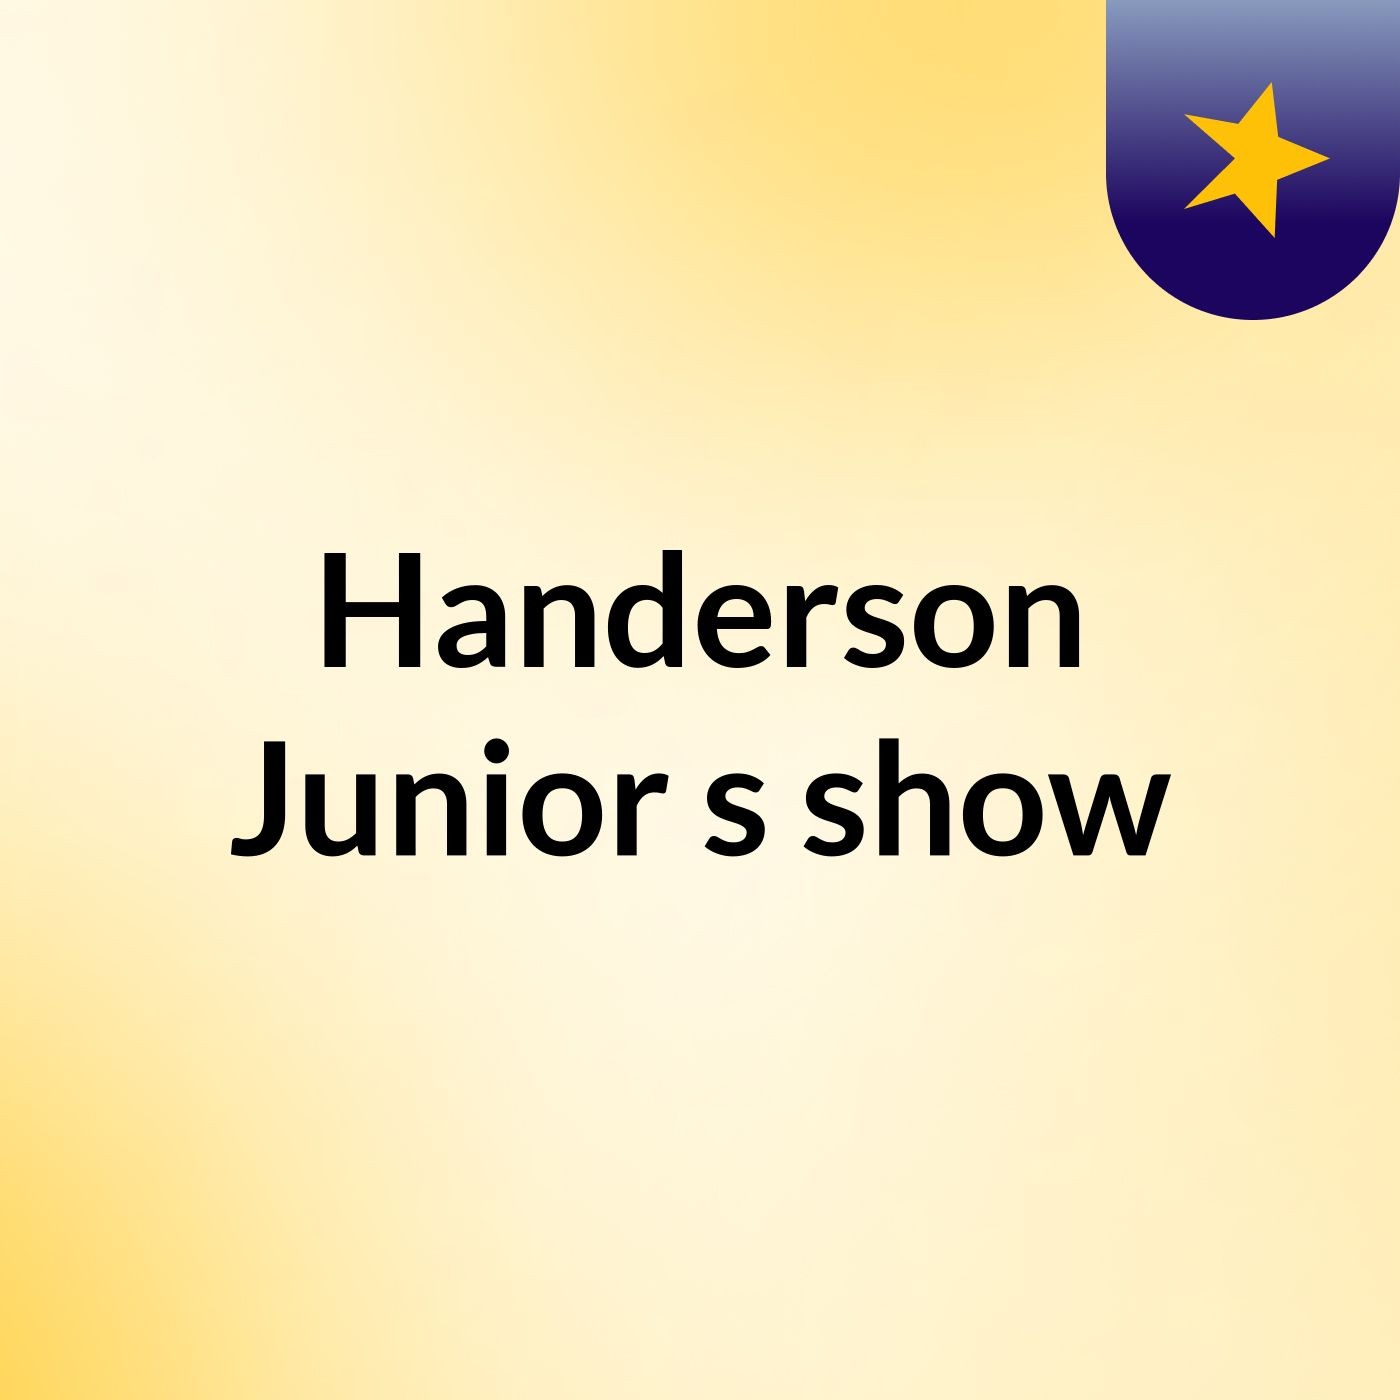 Handerson Junior's show